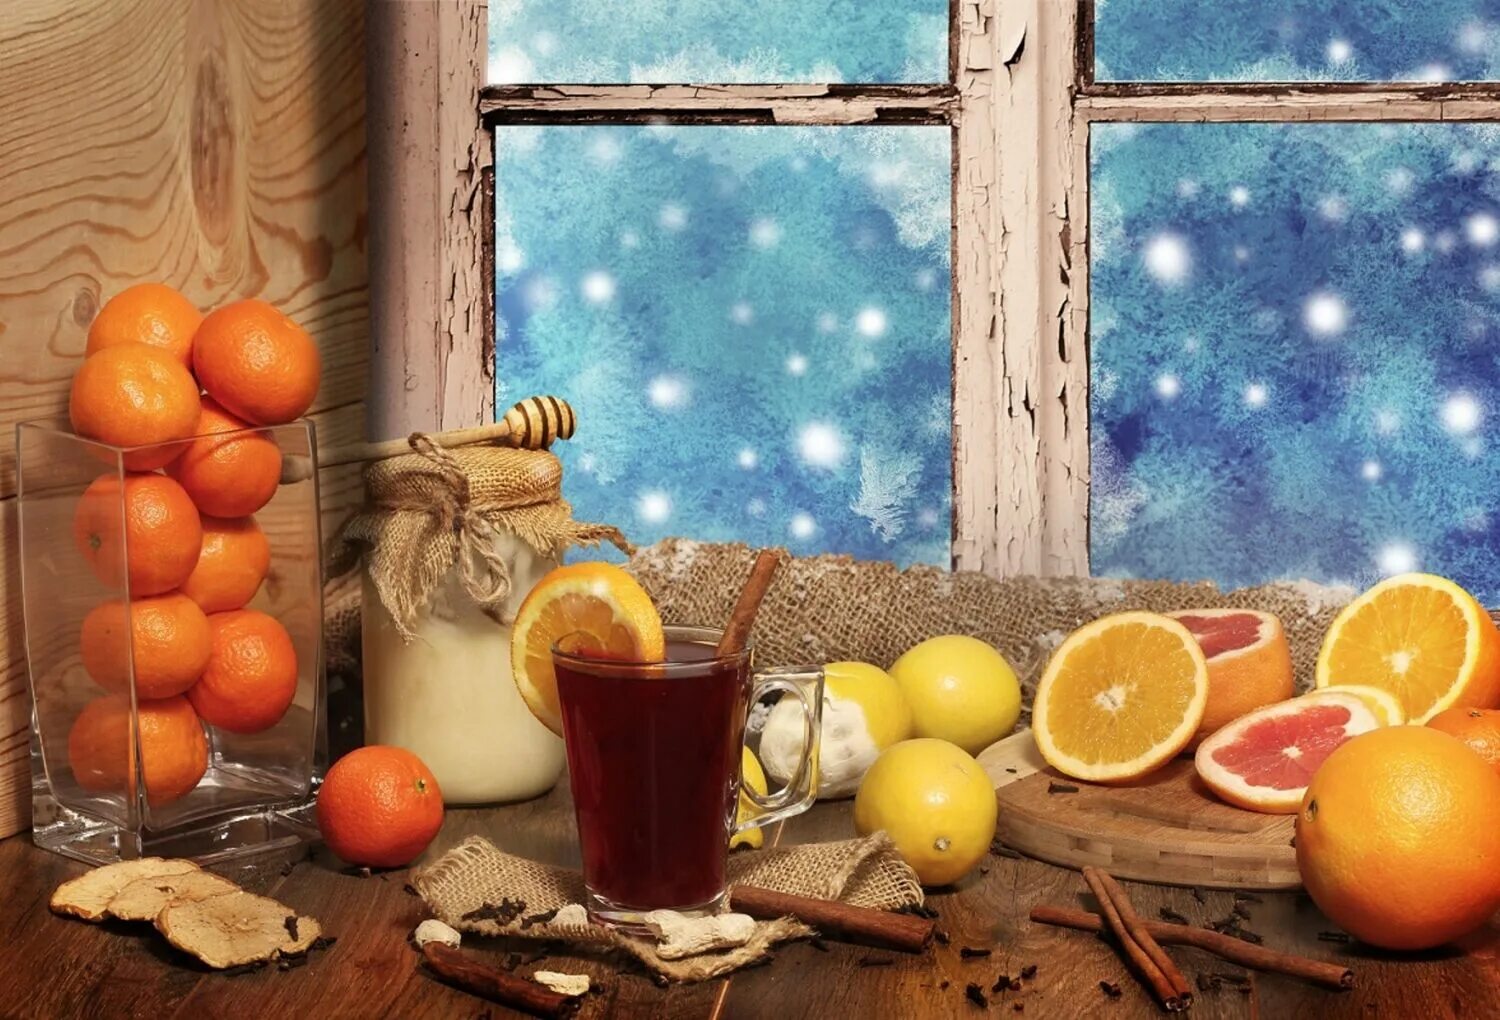 Апельсин есть вечером. Зимний натюрморт. Зимнее окно. Натюрморт с мандаринами. Натюрморт на окне зимний.